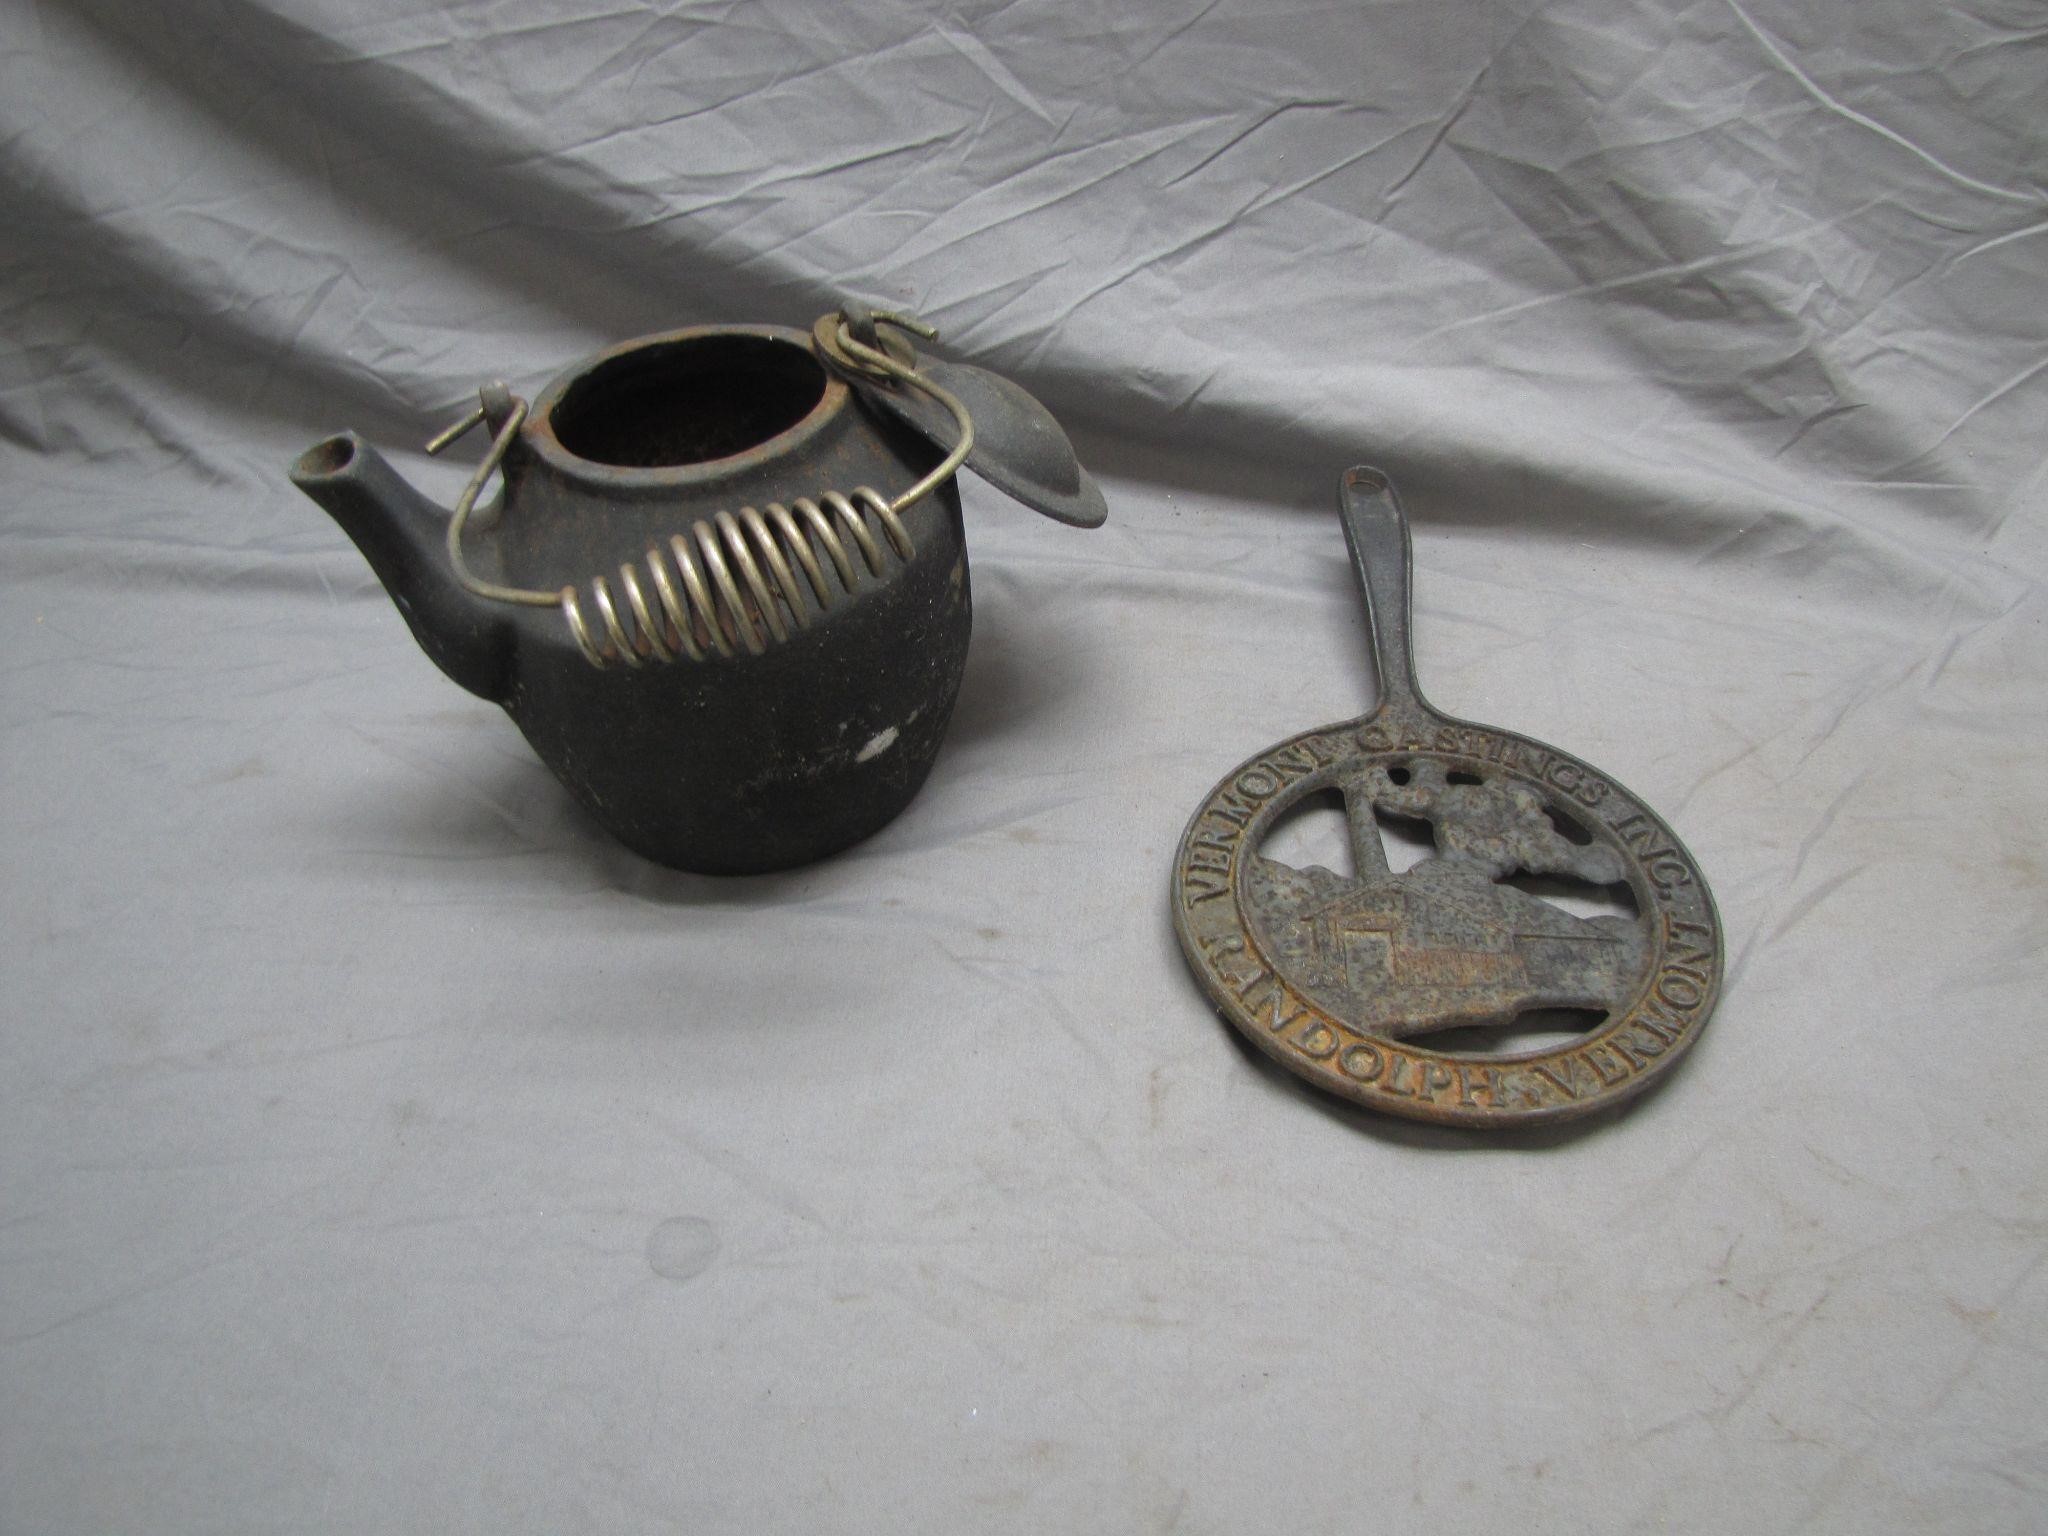 Cast Iron Tea Pot & Vermont Castings Trivet